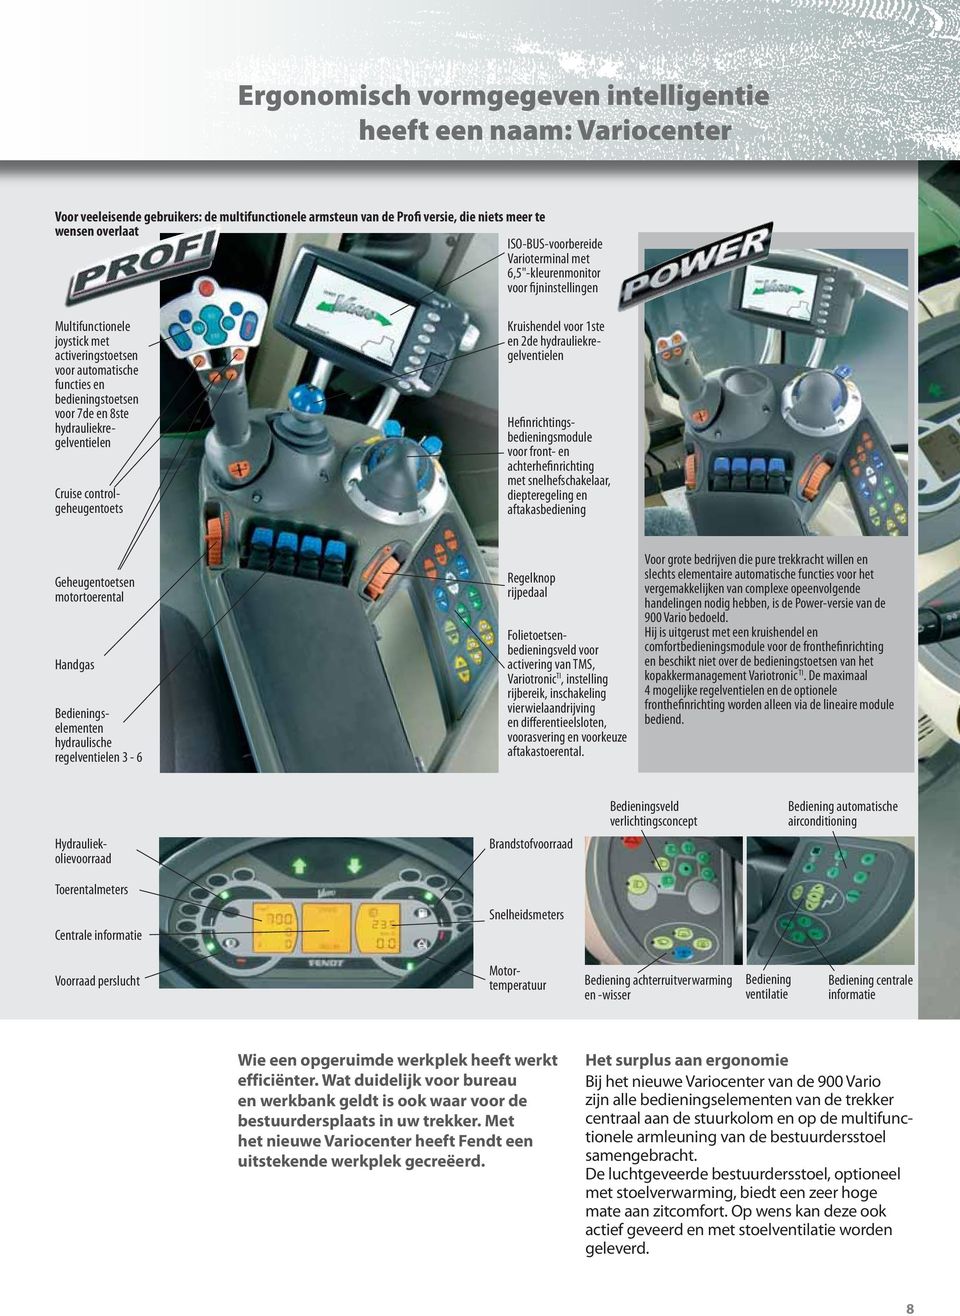 aftakasbediening Geheugentoetsen motortoerental Handgas Multifunctionele joystick met activeringstoetsen voor automatische functies en bedieningstoetsen voor 7de en 8ste hydrauliekregelventielen